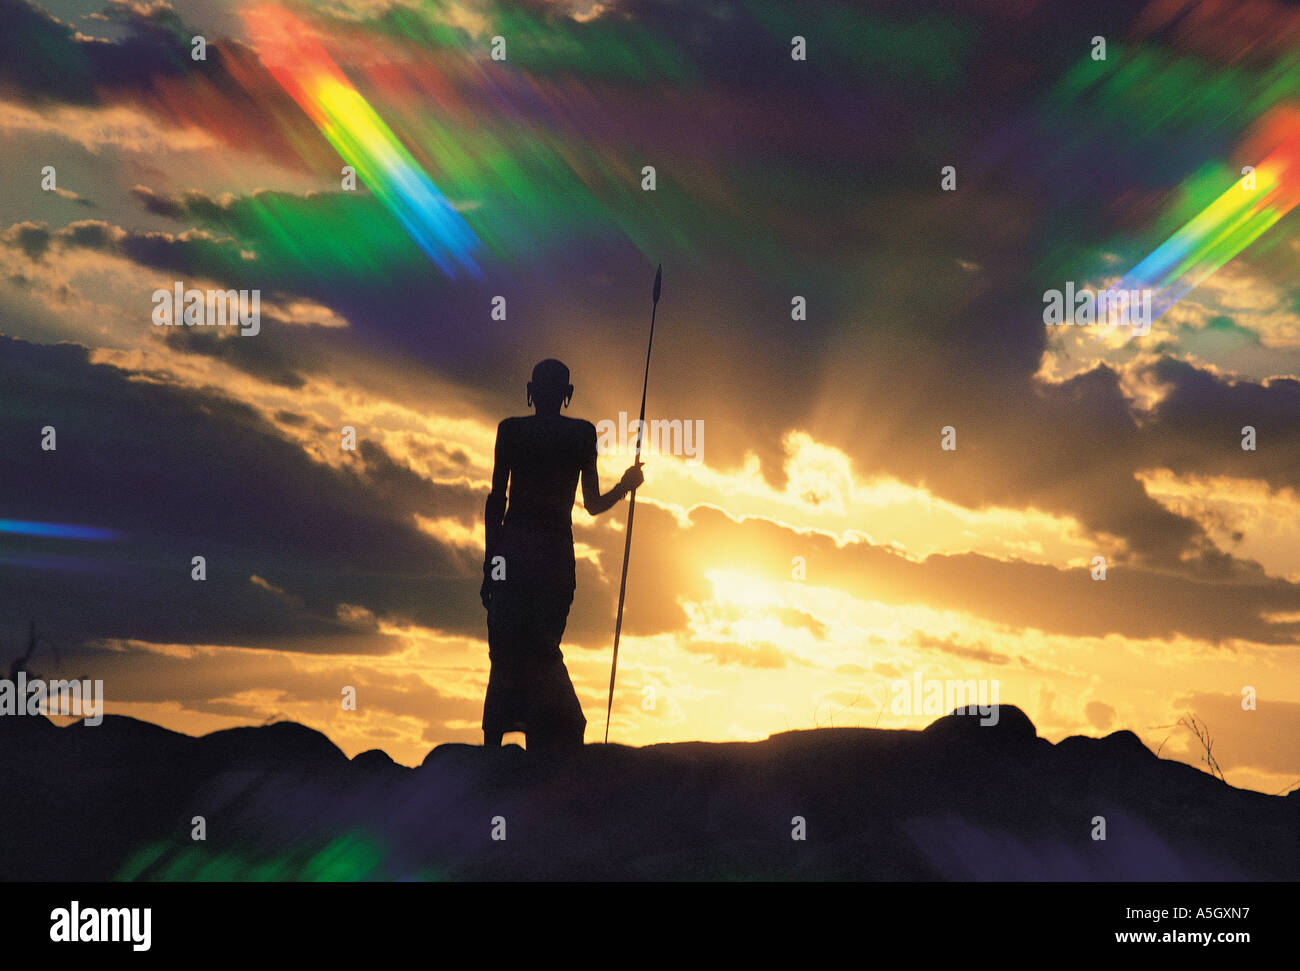 Rendille Mann Silhouette gegen den Sonnenuntergang Himmel genommen mit einem Stern Filter Korr nördlichen Kenia in Ostafrika Stockfoto